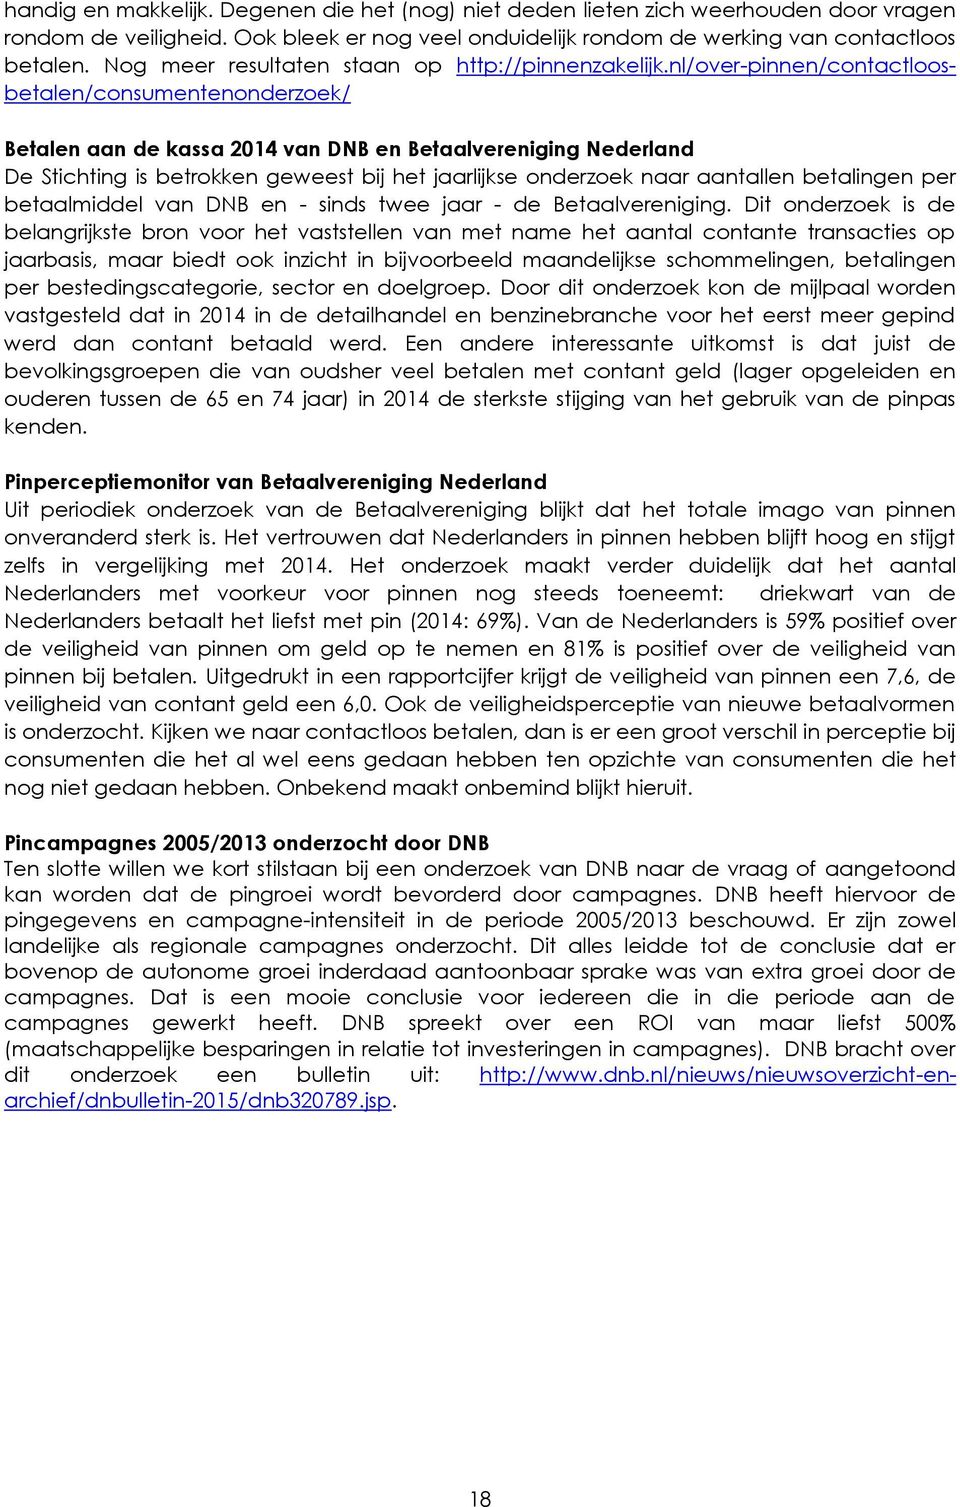 nl/over-pinnen/contactloosbetalen/consumentenonderzoek/ Betalen aan de kassa 2014 van DNB en Betaalvereniging Nederland De Stichting is betrokken geweest bij het jaarlijkse onderzoek naar aantallen